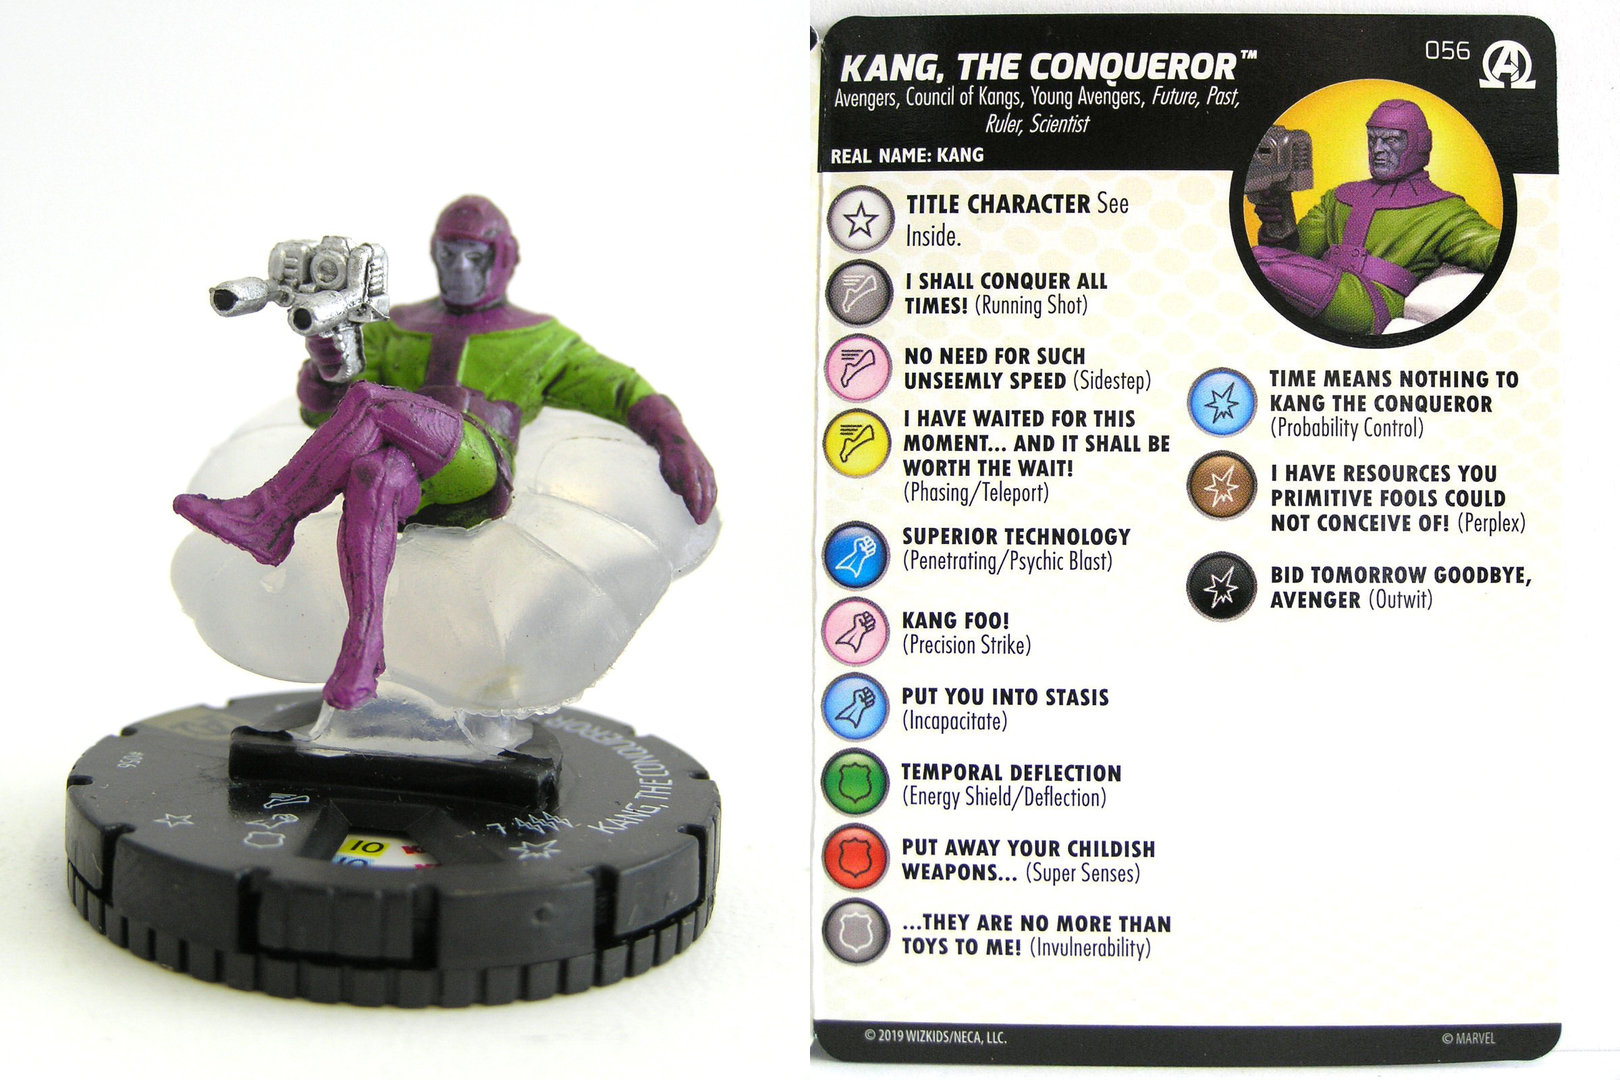 #056 Kang Black Panther and the Illuminati the Conqueror HeroClix